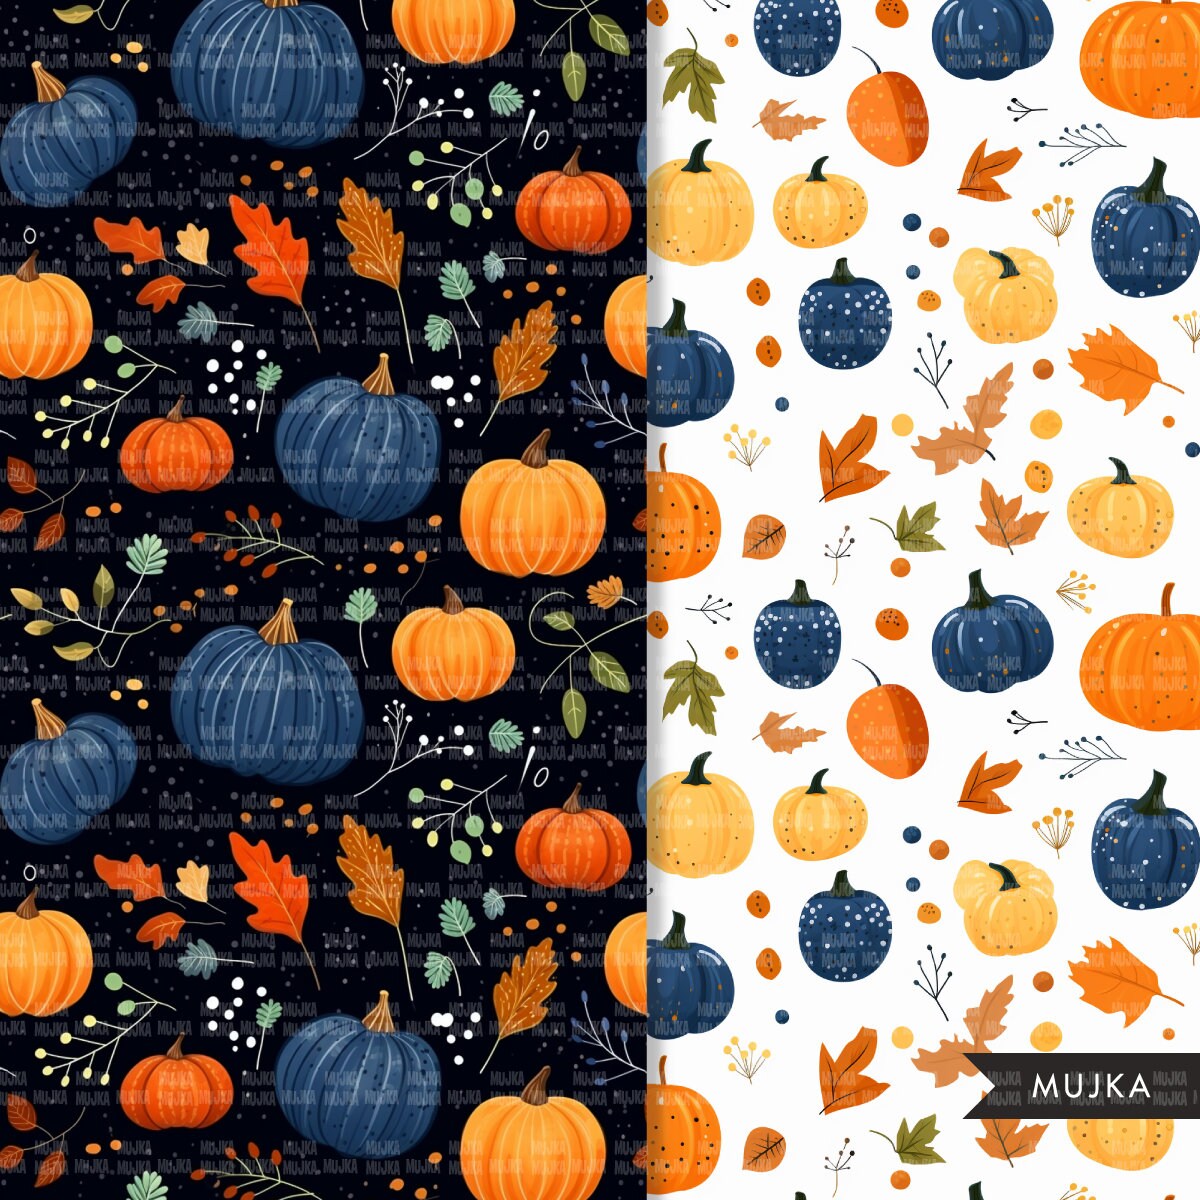 Papeles digitales de otoño, patrones sin costuras de calabaza, patrón imprimible de hojas de otoño, fondo digital, calabazas de otoño png, fondo de otoño